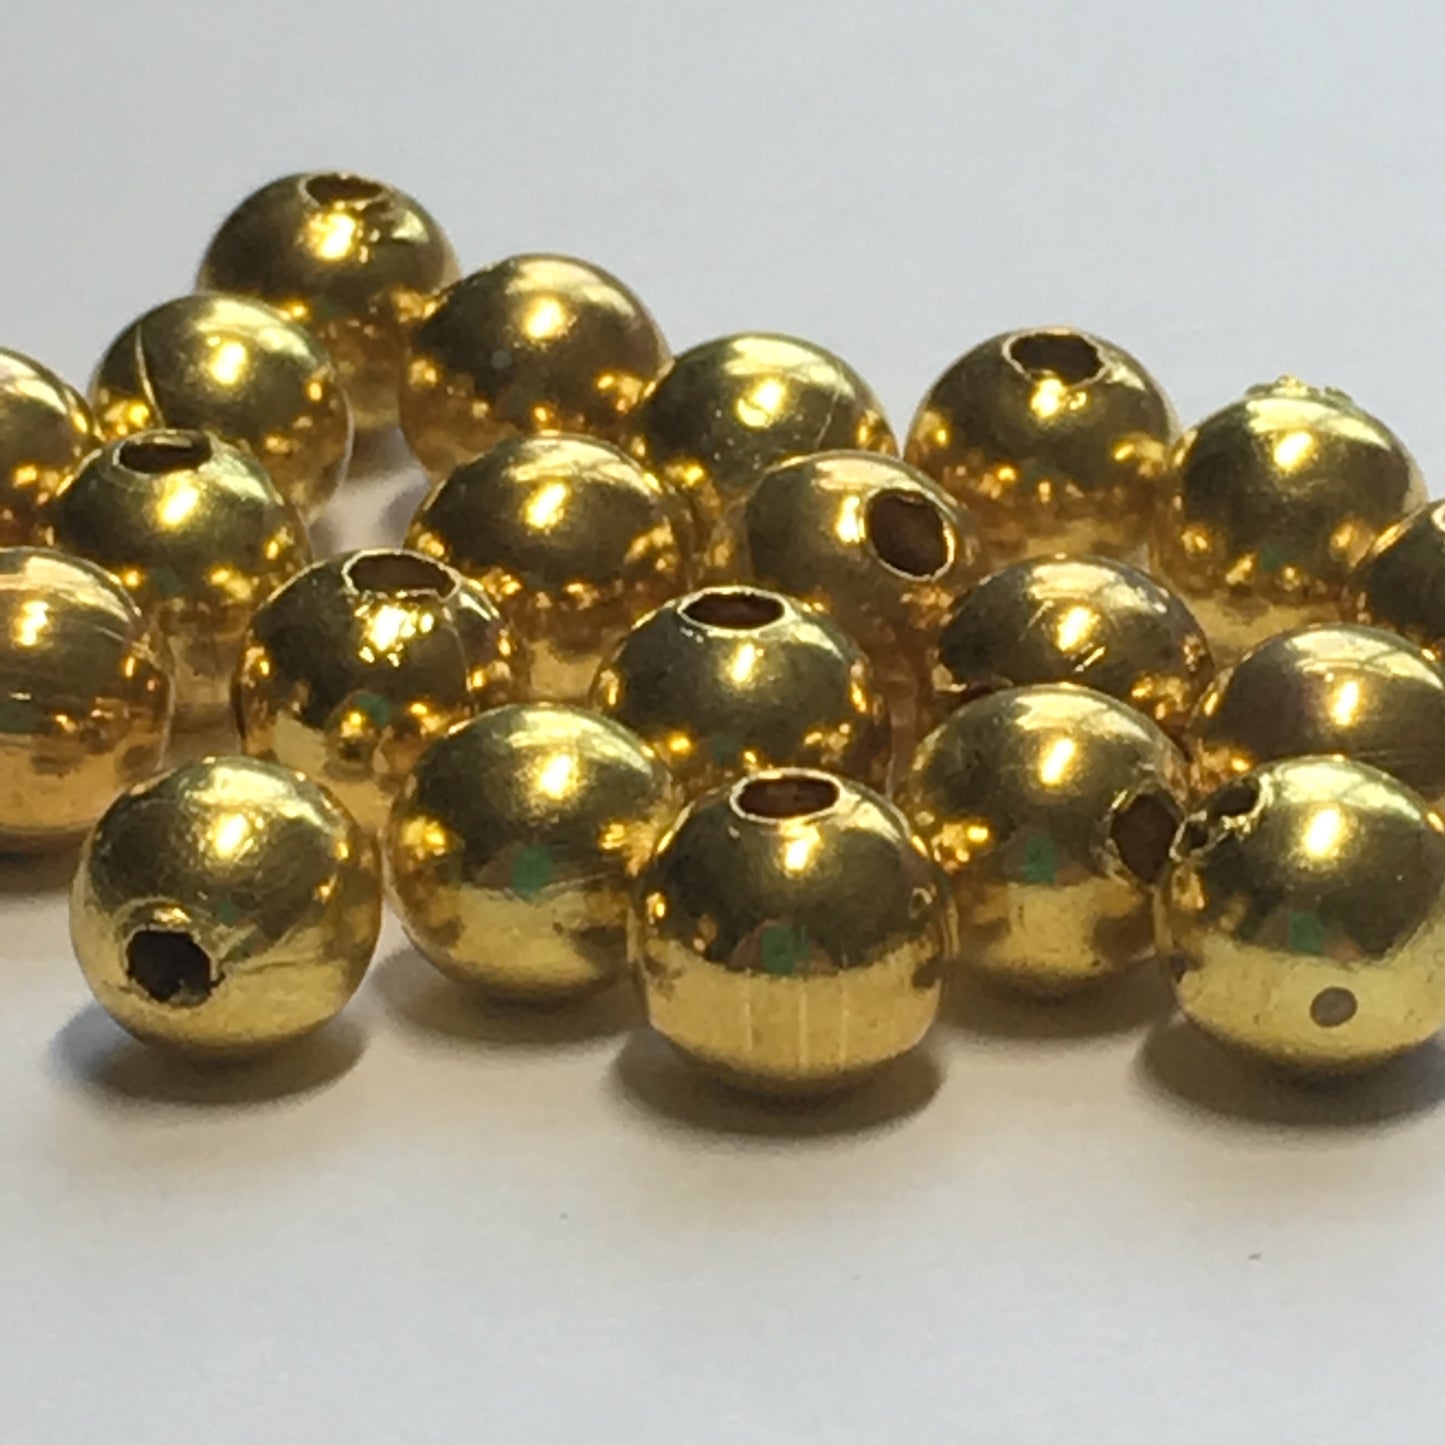 Gold Round Beads, 6 mm - 25 Beads